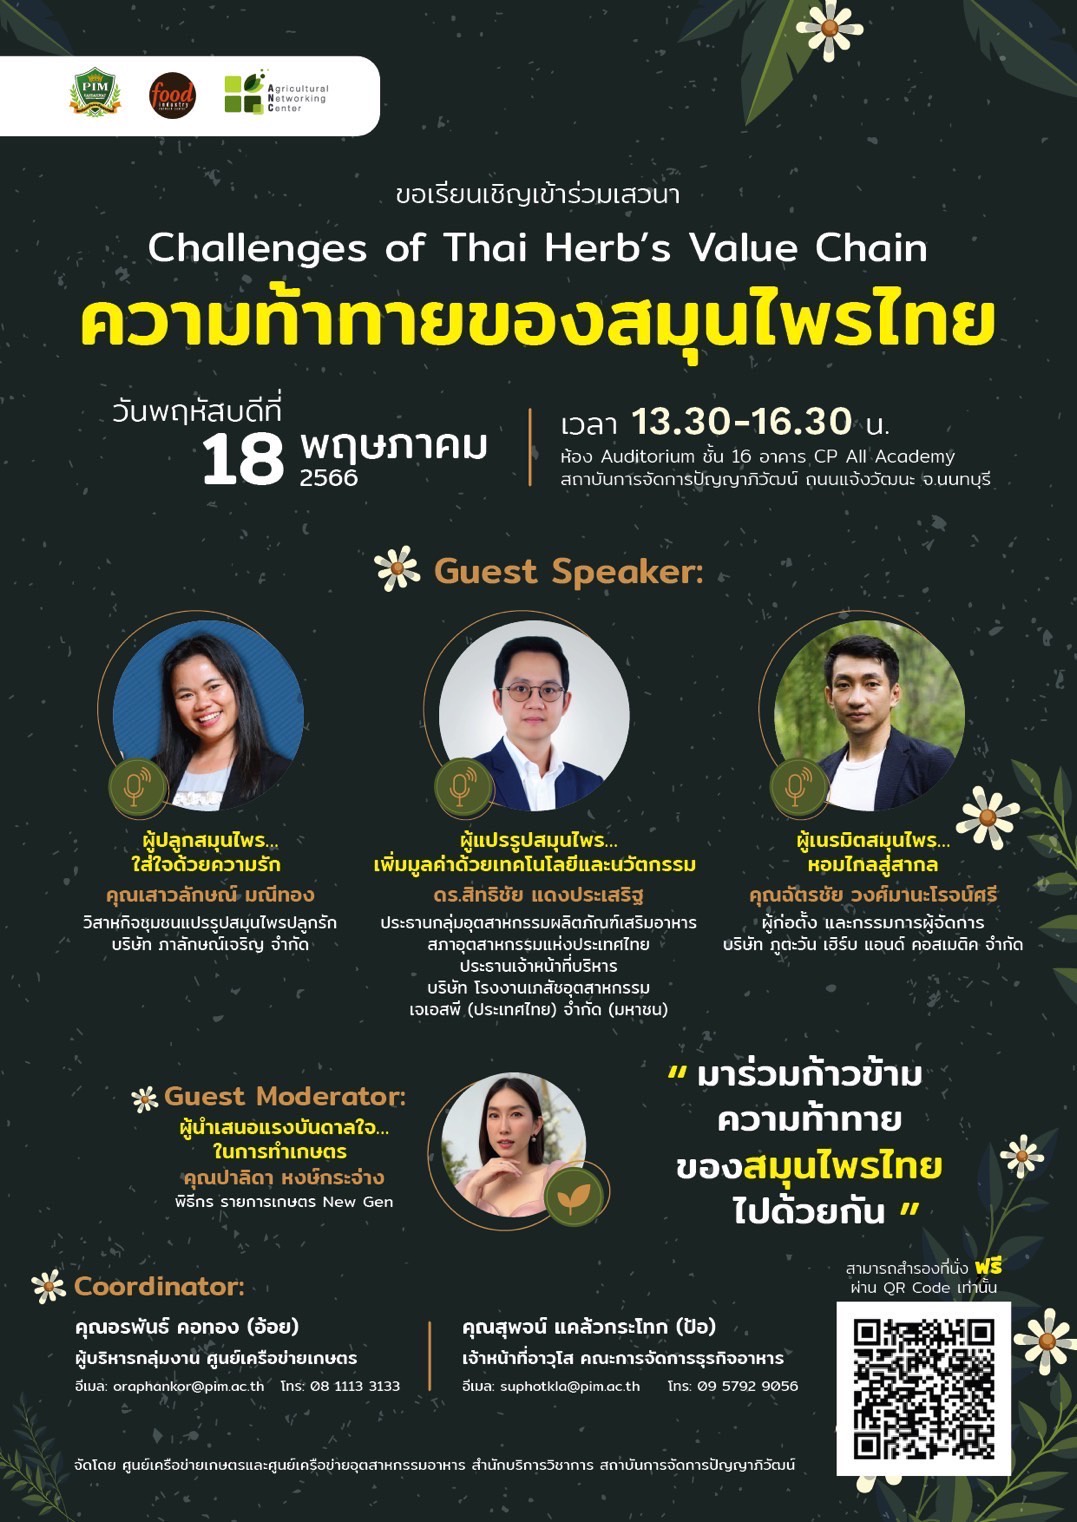 สถาบันการจัดการปัญญาภิวัฒน์ เชิญร่วมฟังเสวนา Challenges of Thai Herb's Value Chain ความท้าทายของสมุนไพรไทย ฟรี! ในวันที่18